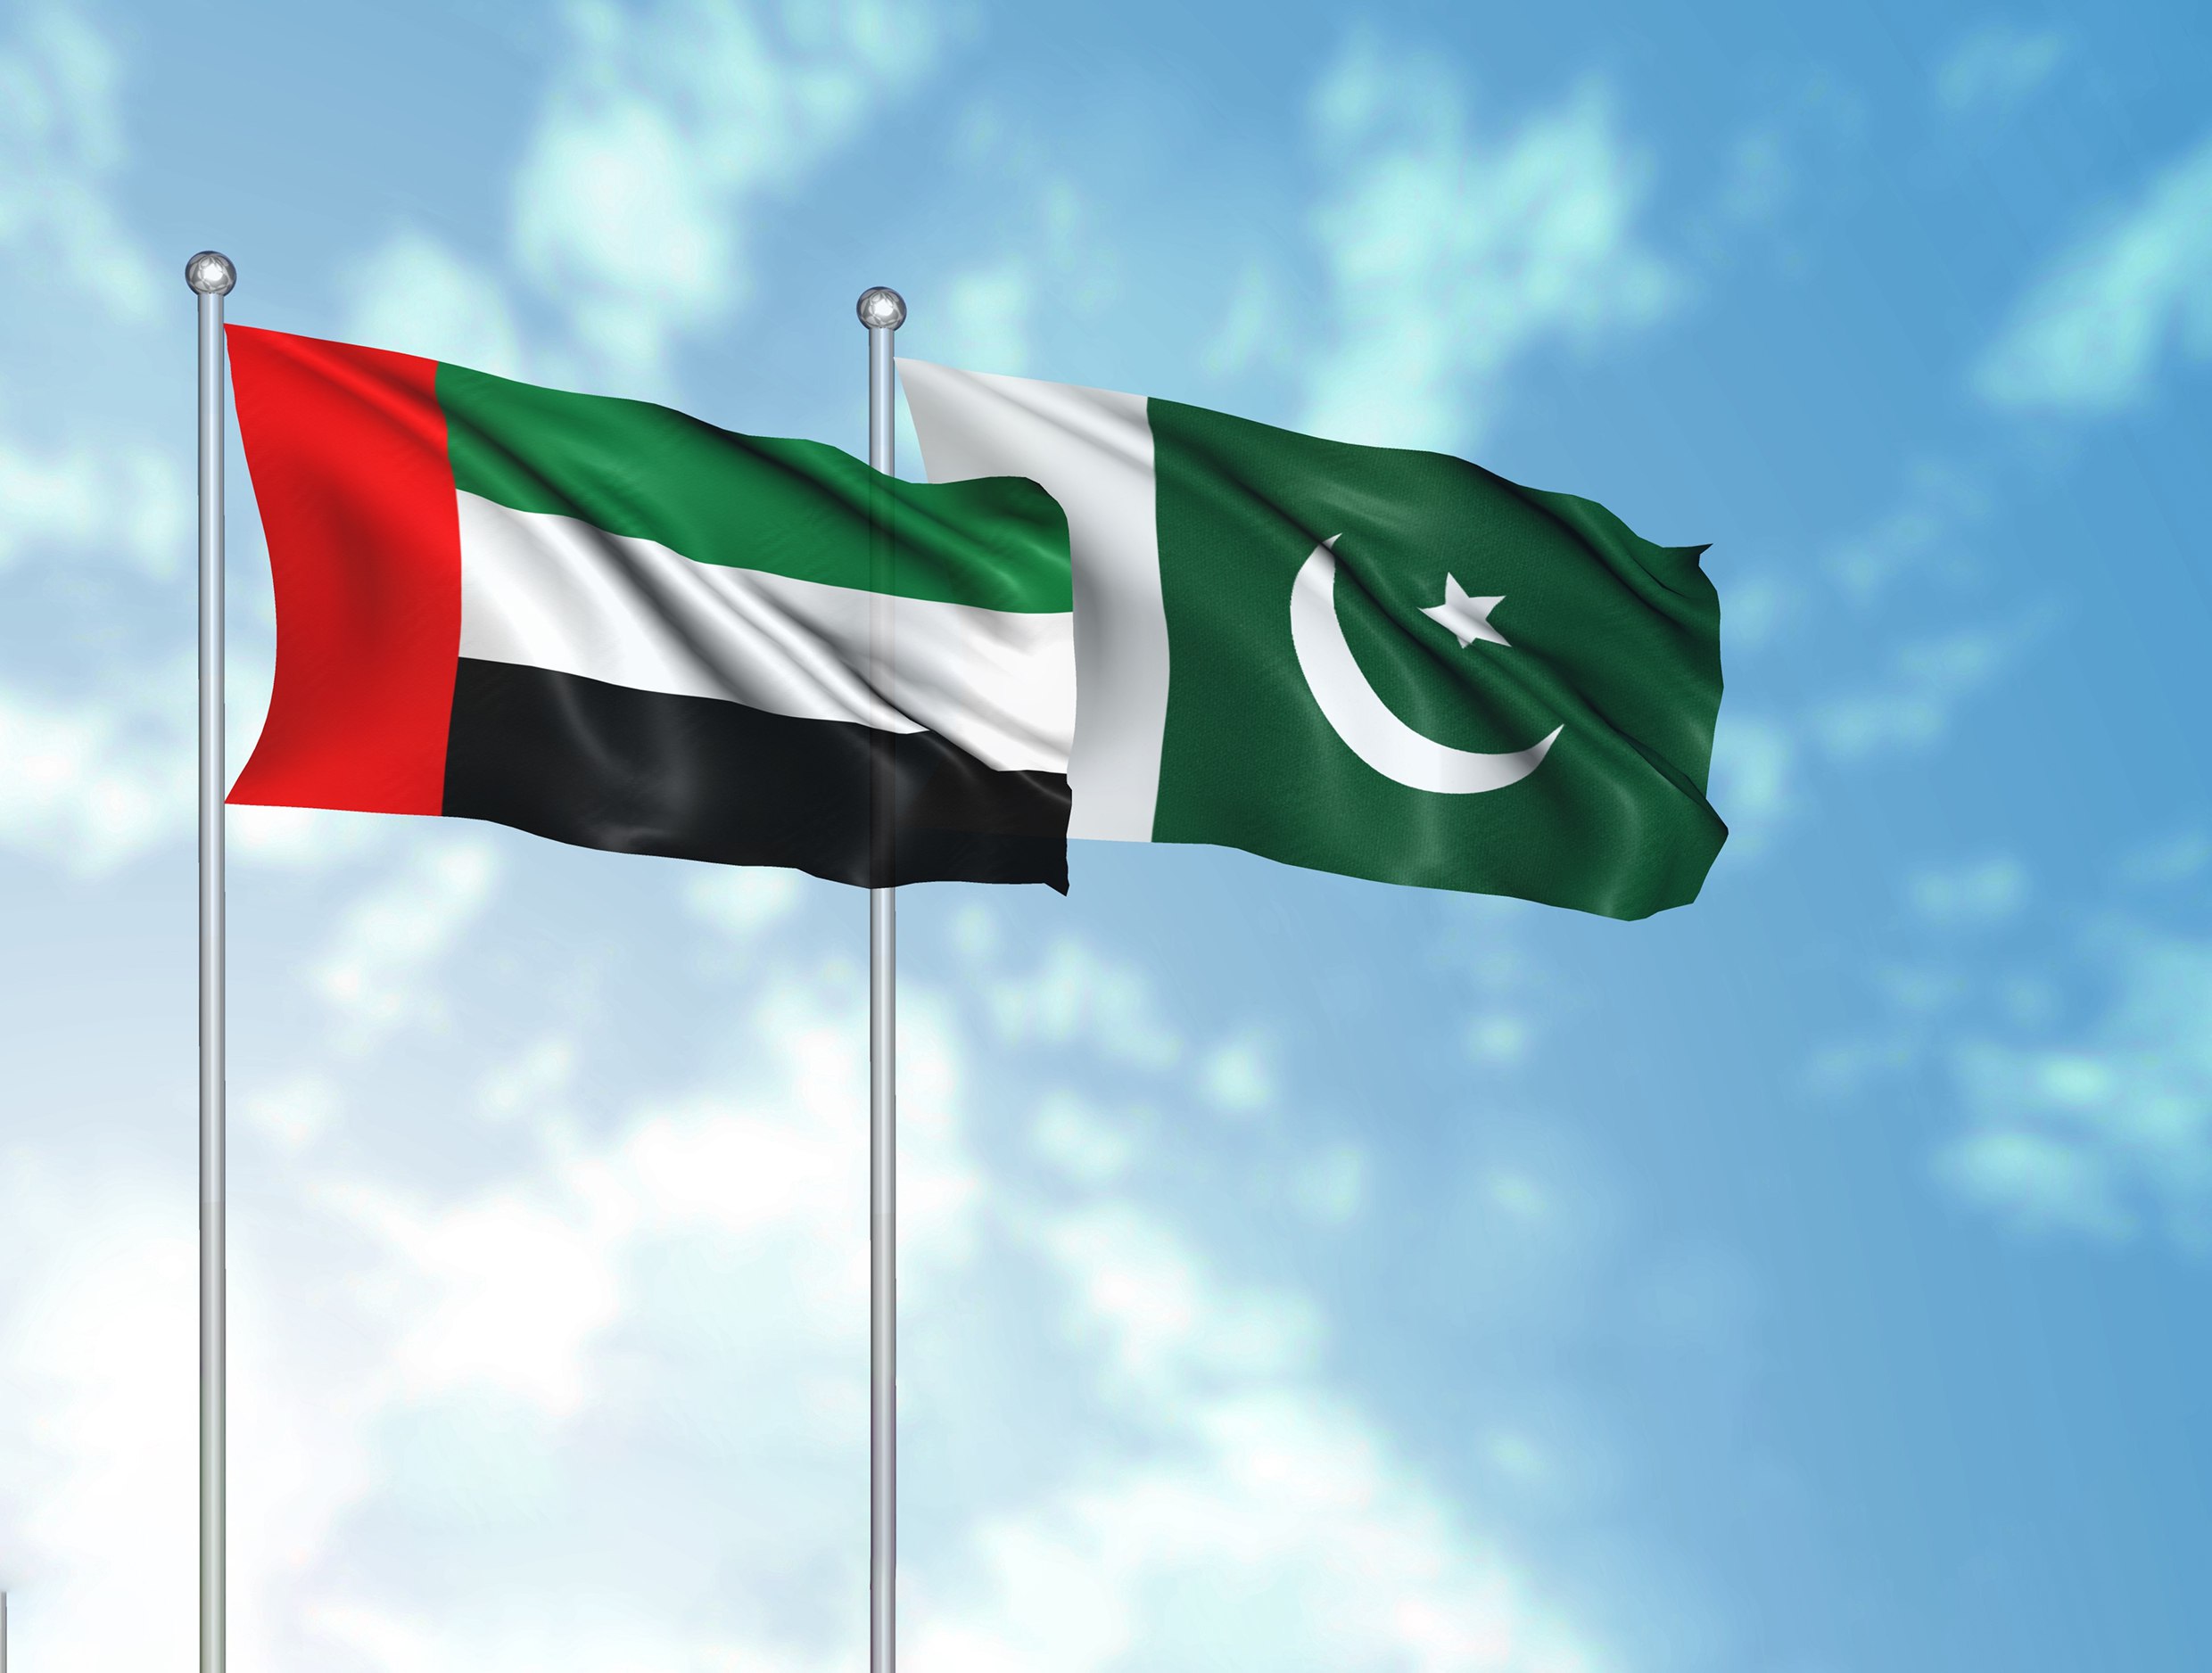 الإمارات وباكستان تؤكدان في بيان مشترك سعيهما لتعزيز شراكتهما الاستراتيجية